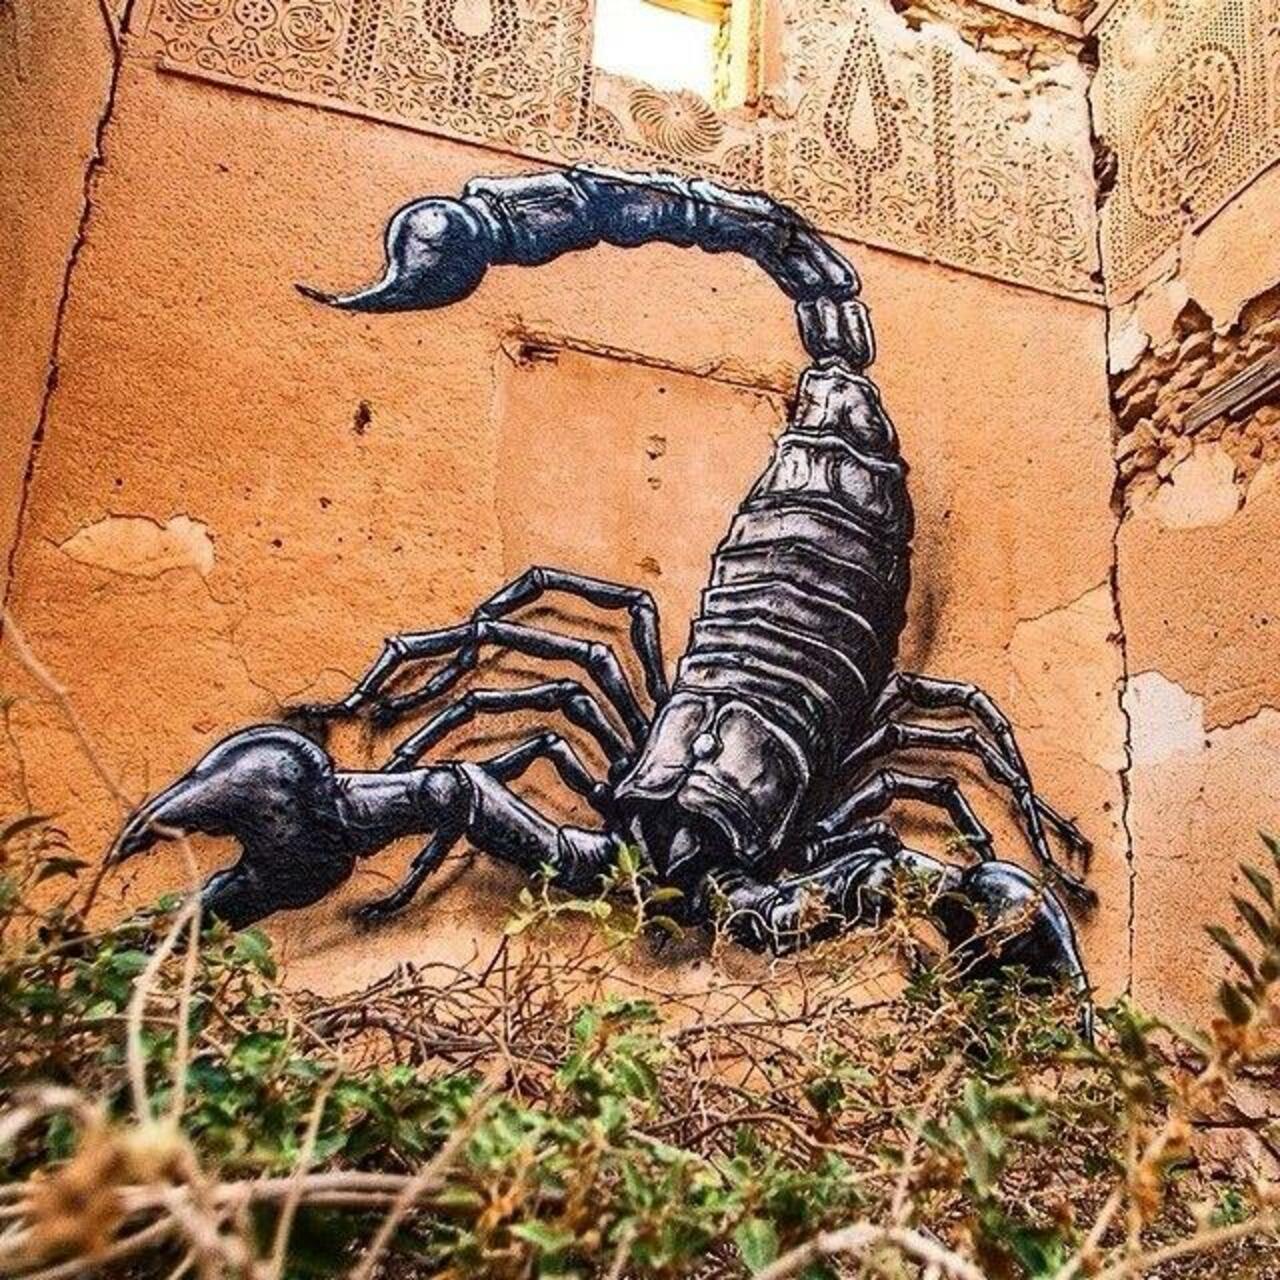 RT @AniesDewiArtist: We #scorpio #love @BuyHerBeads RT Artist ROA new #Scorpion #streetart mural in Djerba,Tunisia #graffiti #nature #art http://t.co/VxckVDIrm9